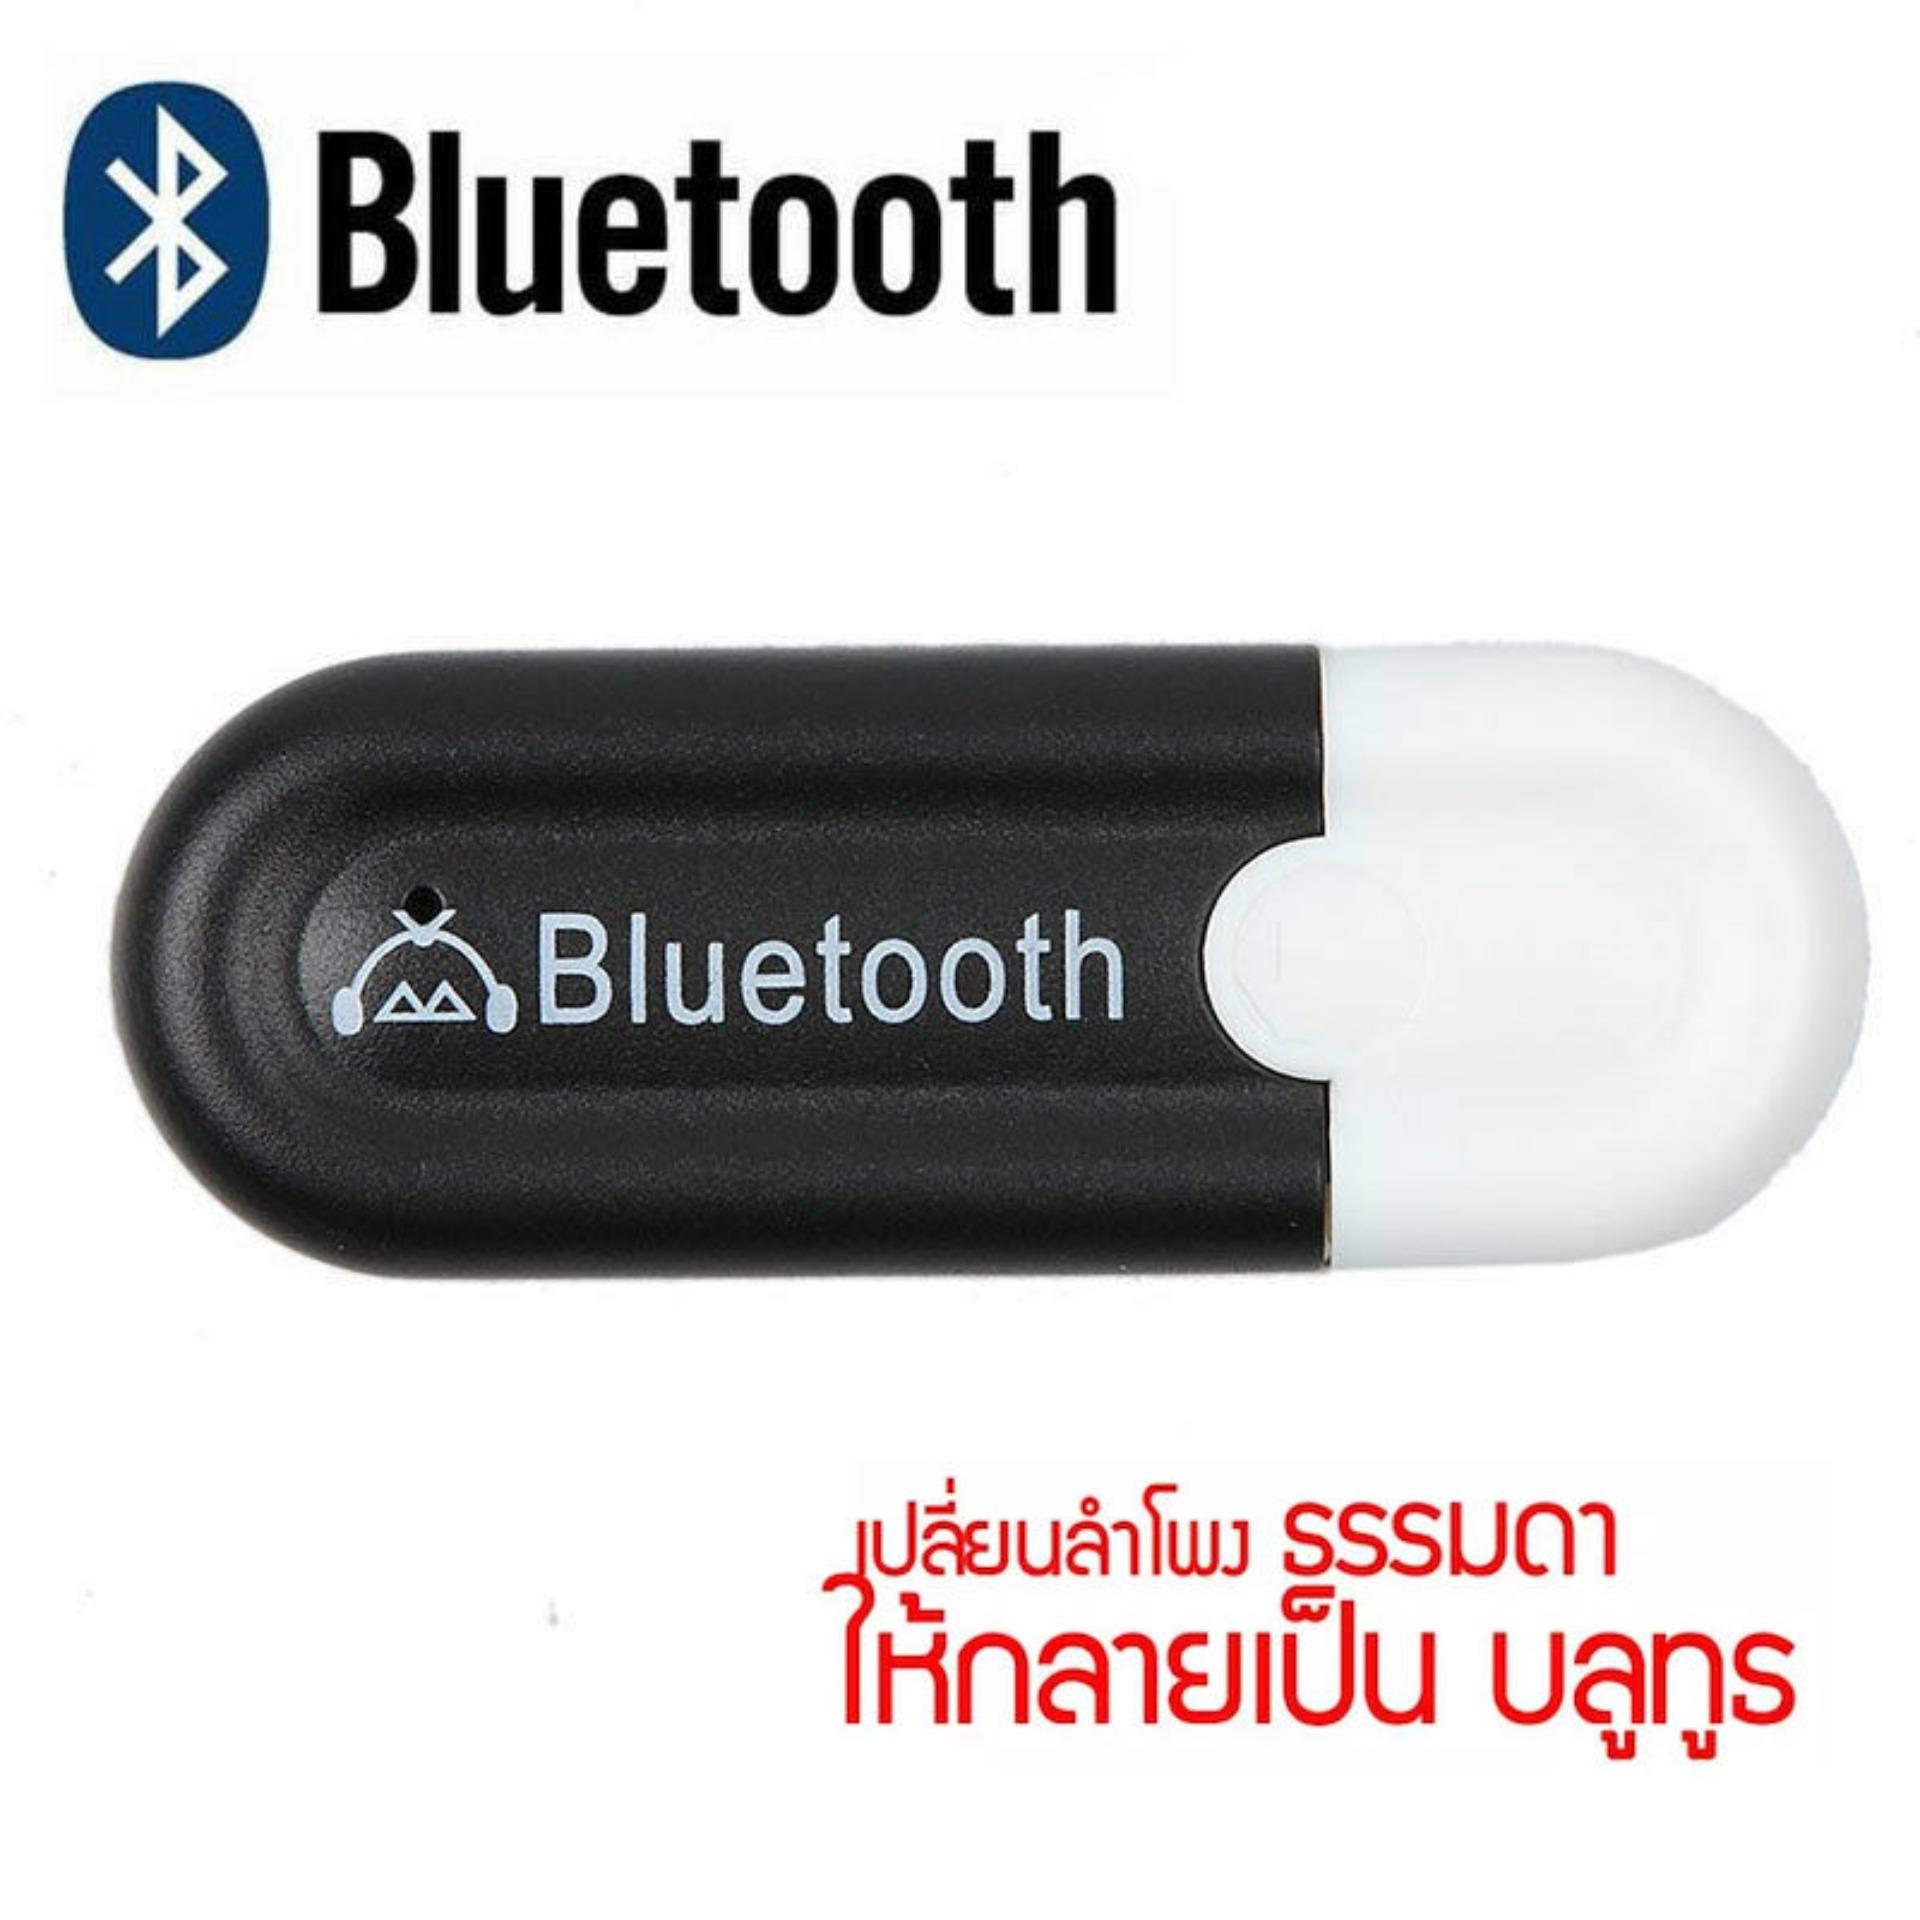 Bluetooth Usb บลูทูธมิวสิครับสัญญาณเสียง 3.5mm รุ่น Hjx-001 แจ็คสเตอริโอไร้สาย Usb A2dp Blutooth 4.0 สำหรับรถ หูฟัง. 